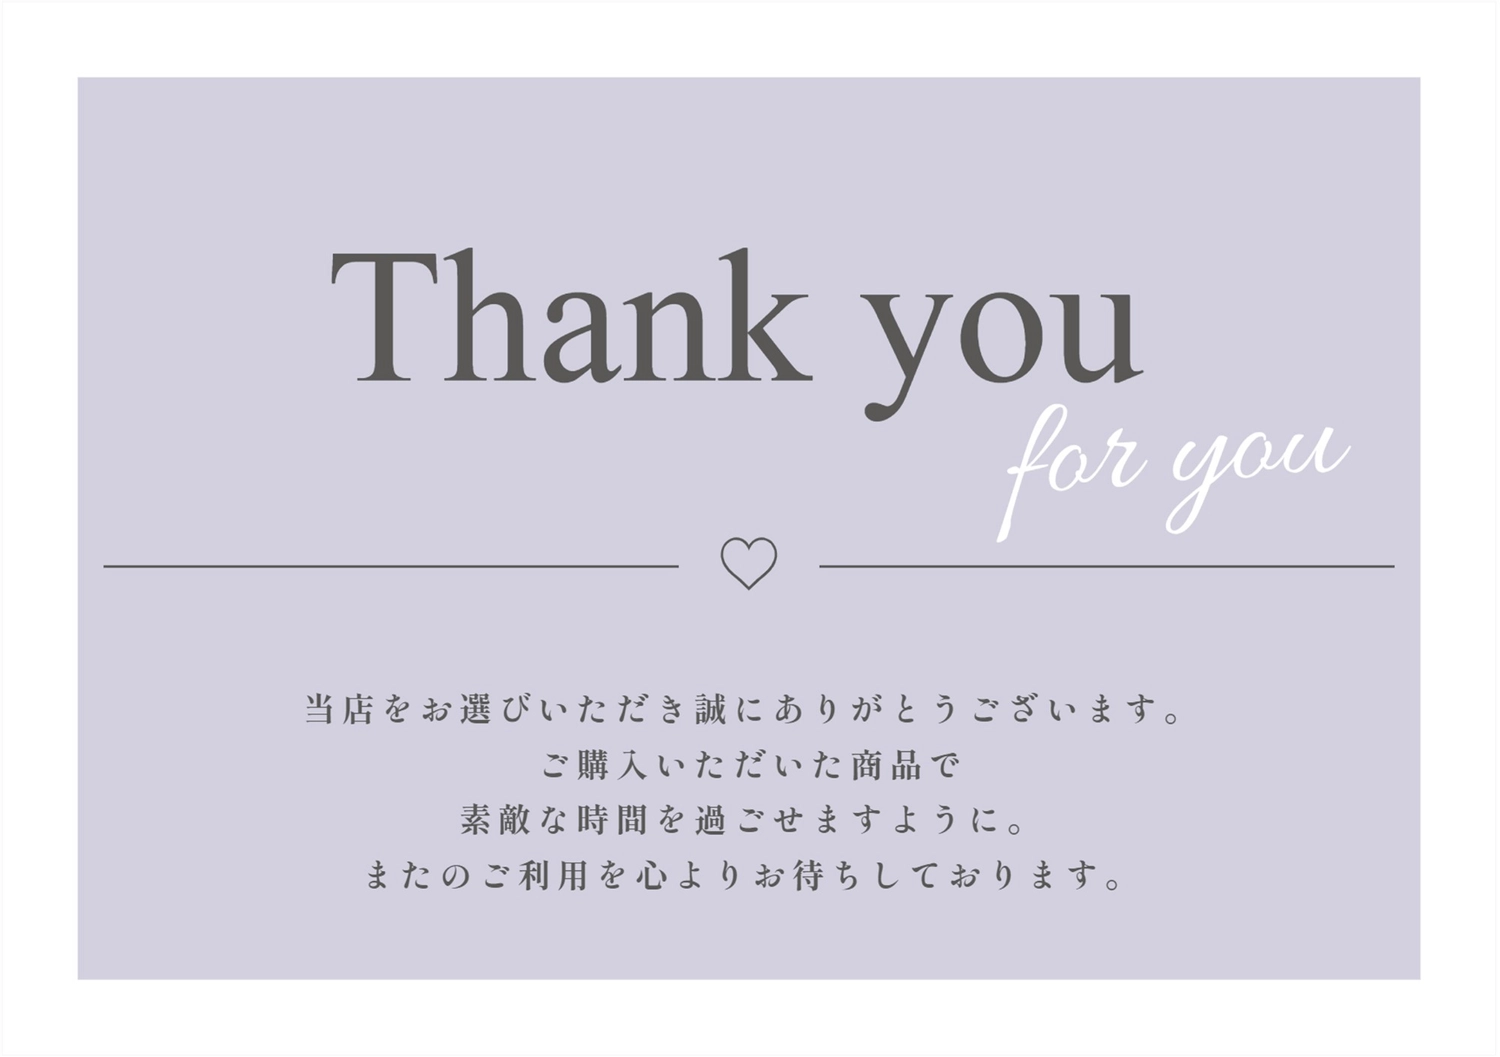 たくさんのご購入ありがとうございます(*´꒳`*)